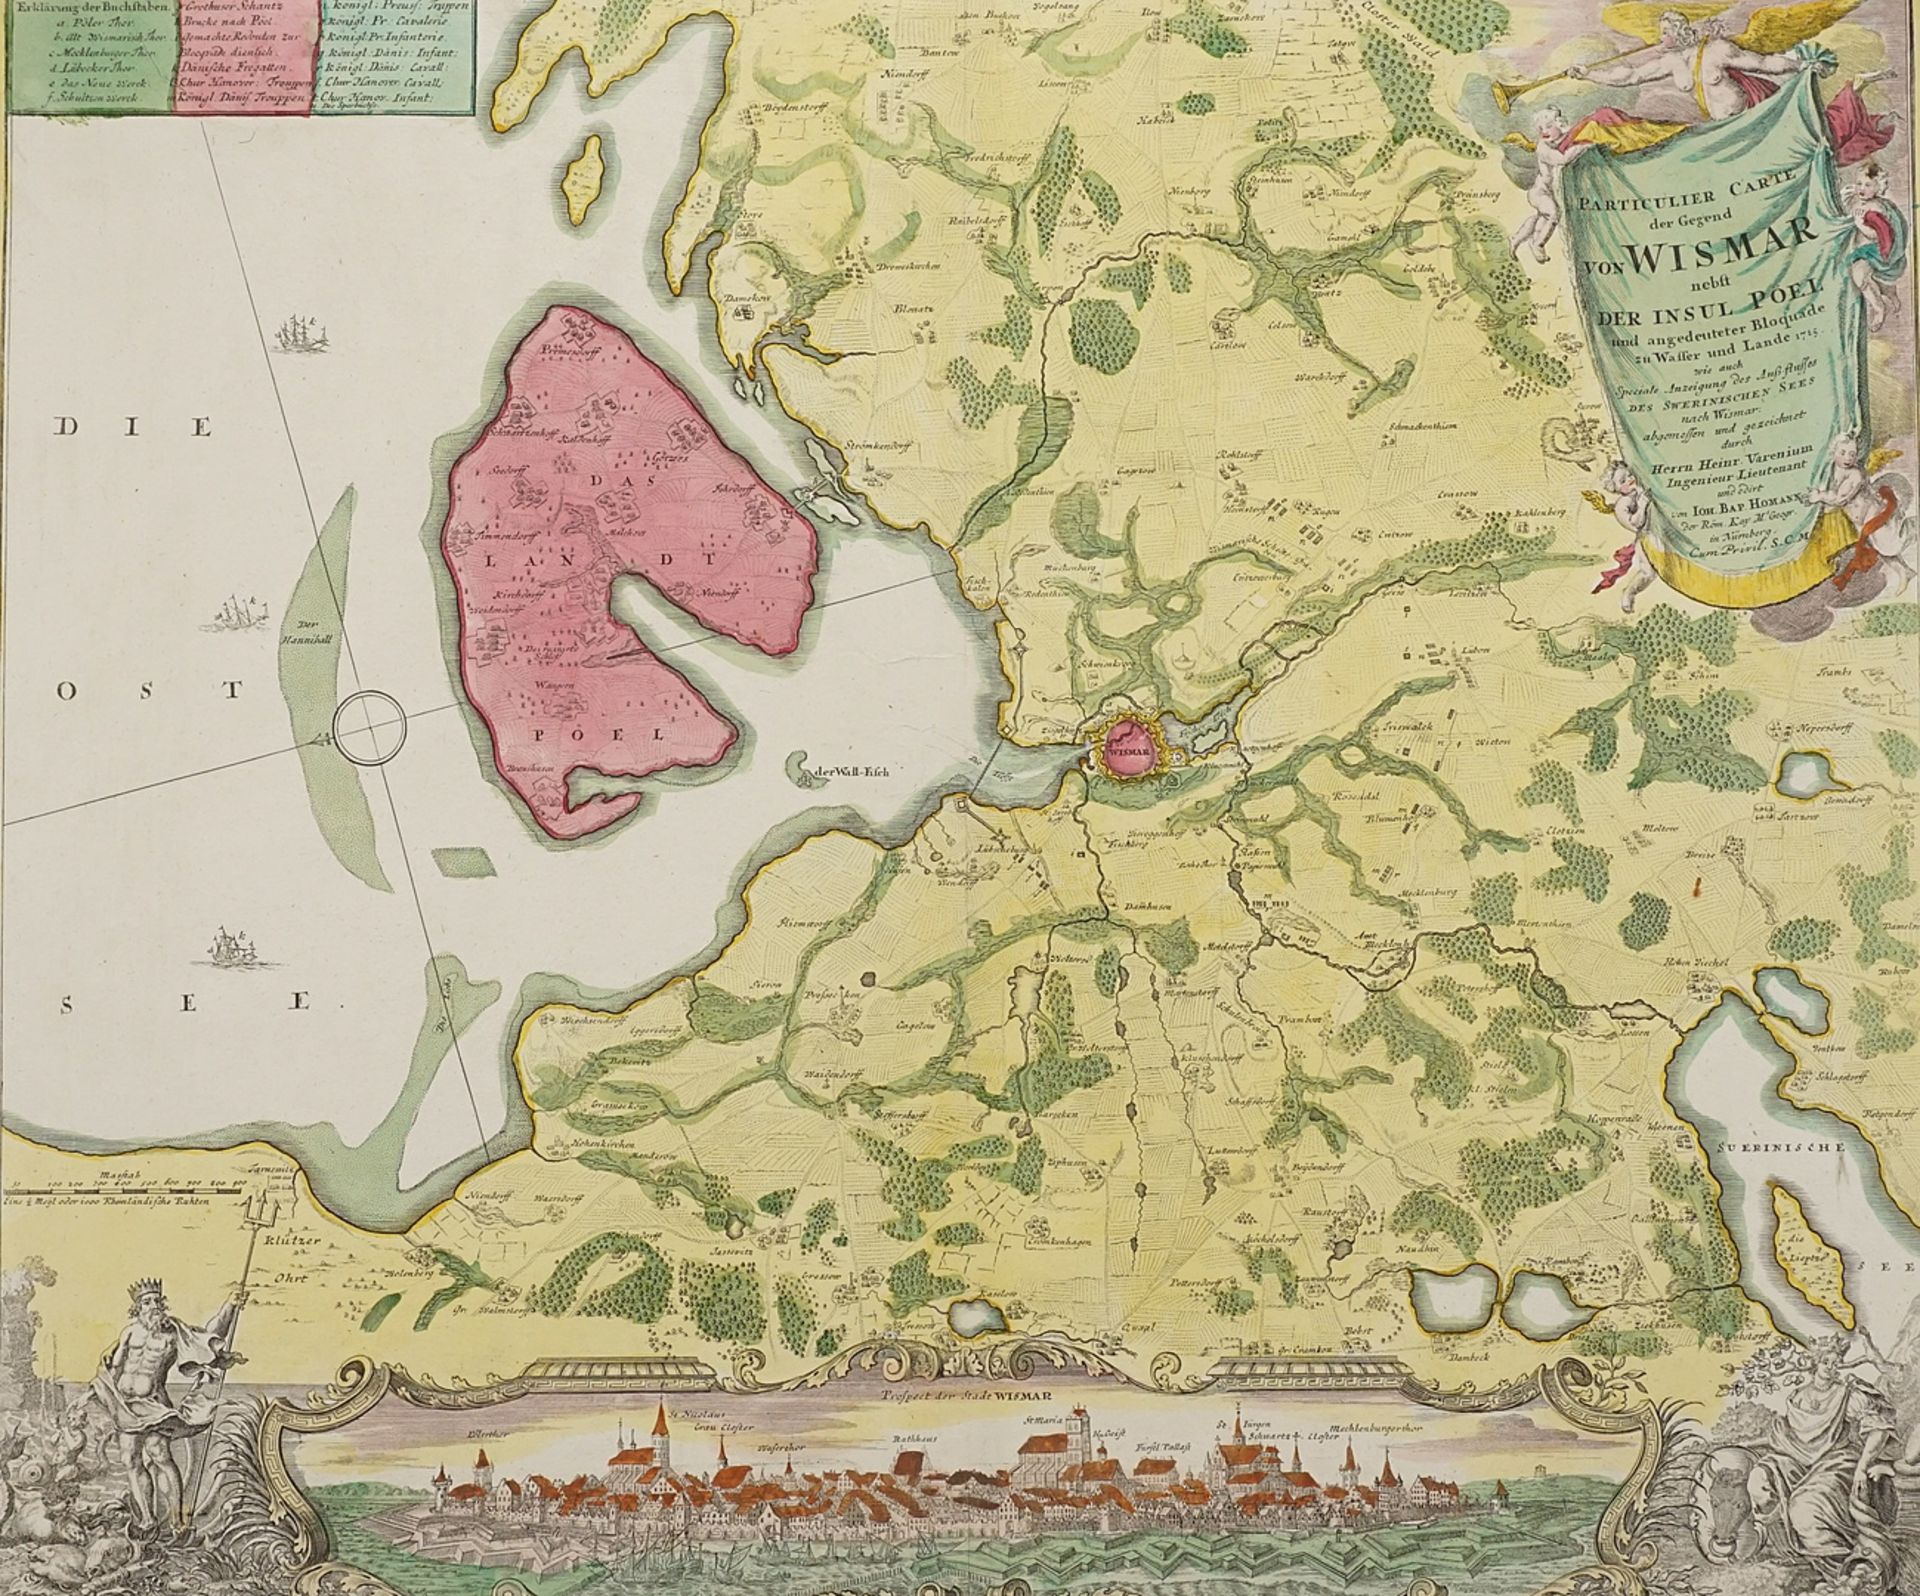 Johann Baptist Homann (1664-1724), "Particulier Carte der Gegend von Wismar" (Map of Wismar region)